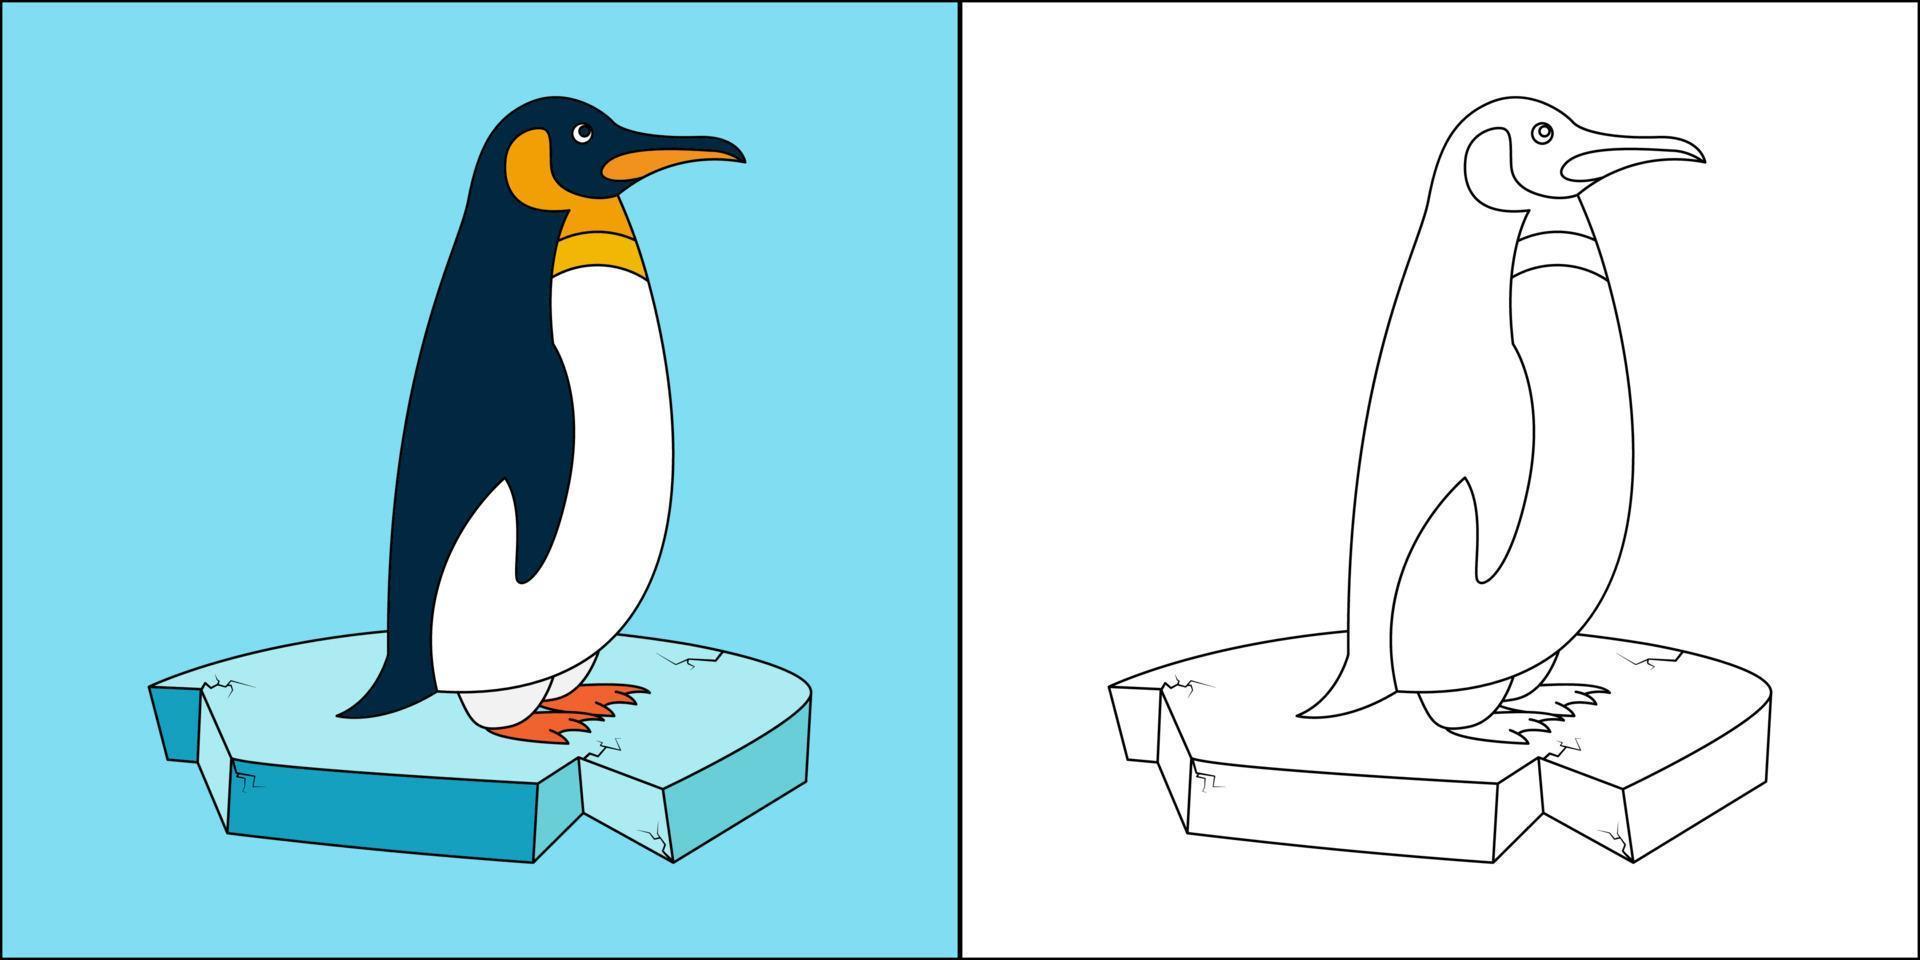 Pinguin auf Eis, geeignet für Malvorlagen für Kinder, Vektorgrafik vektor